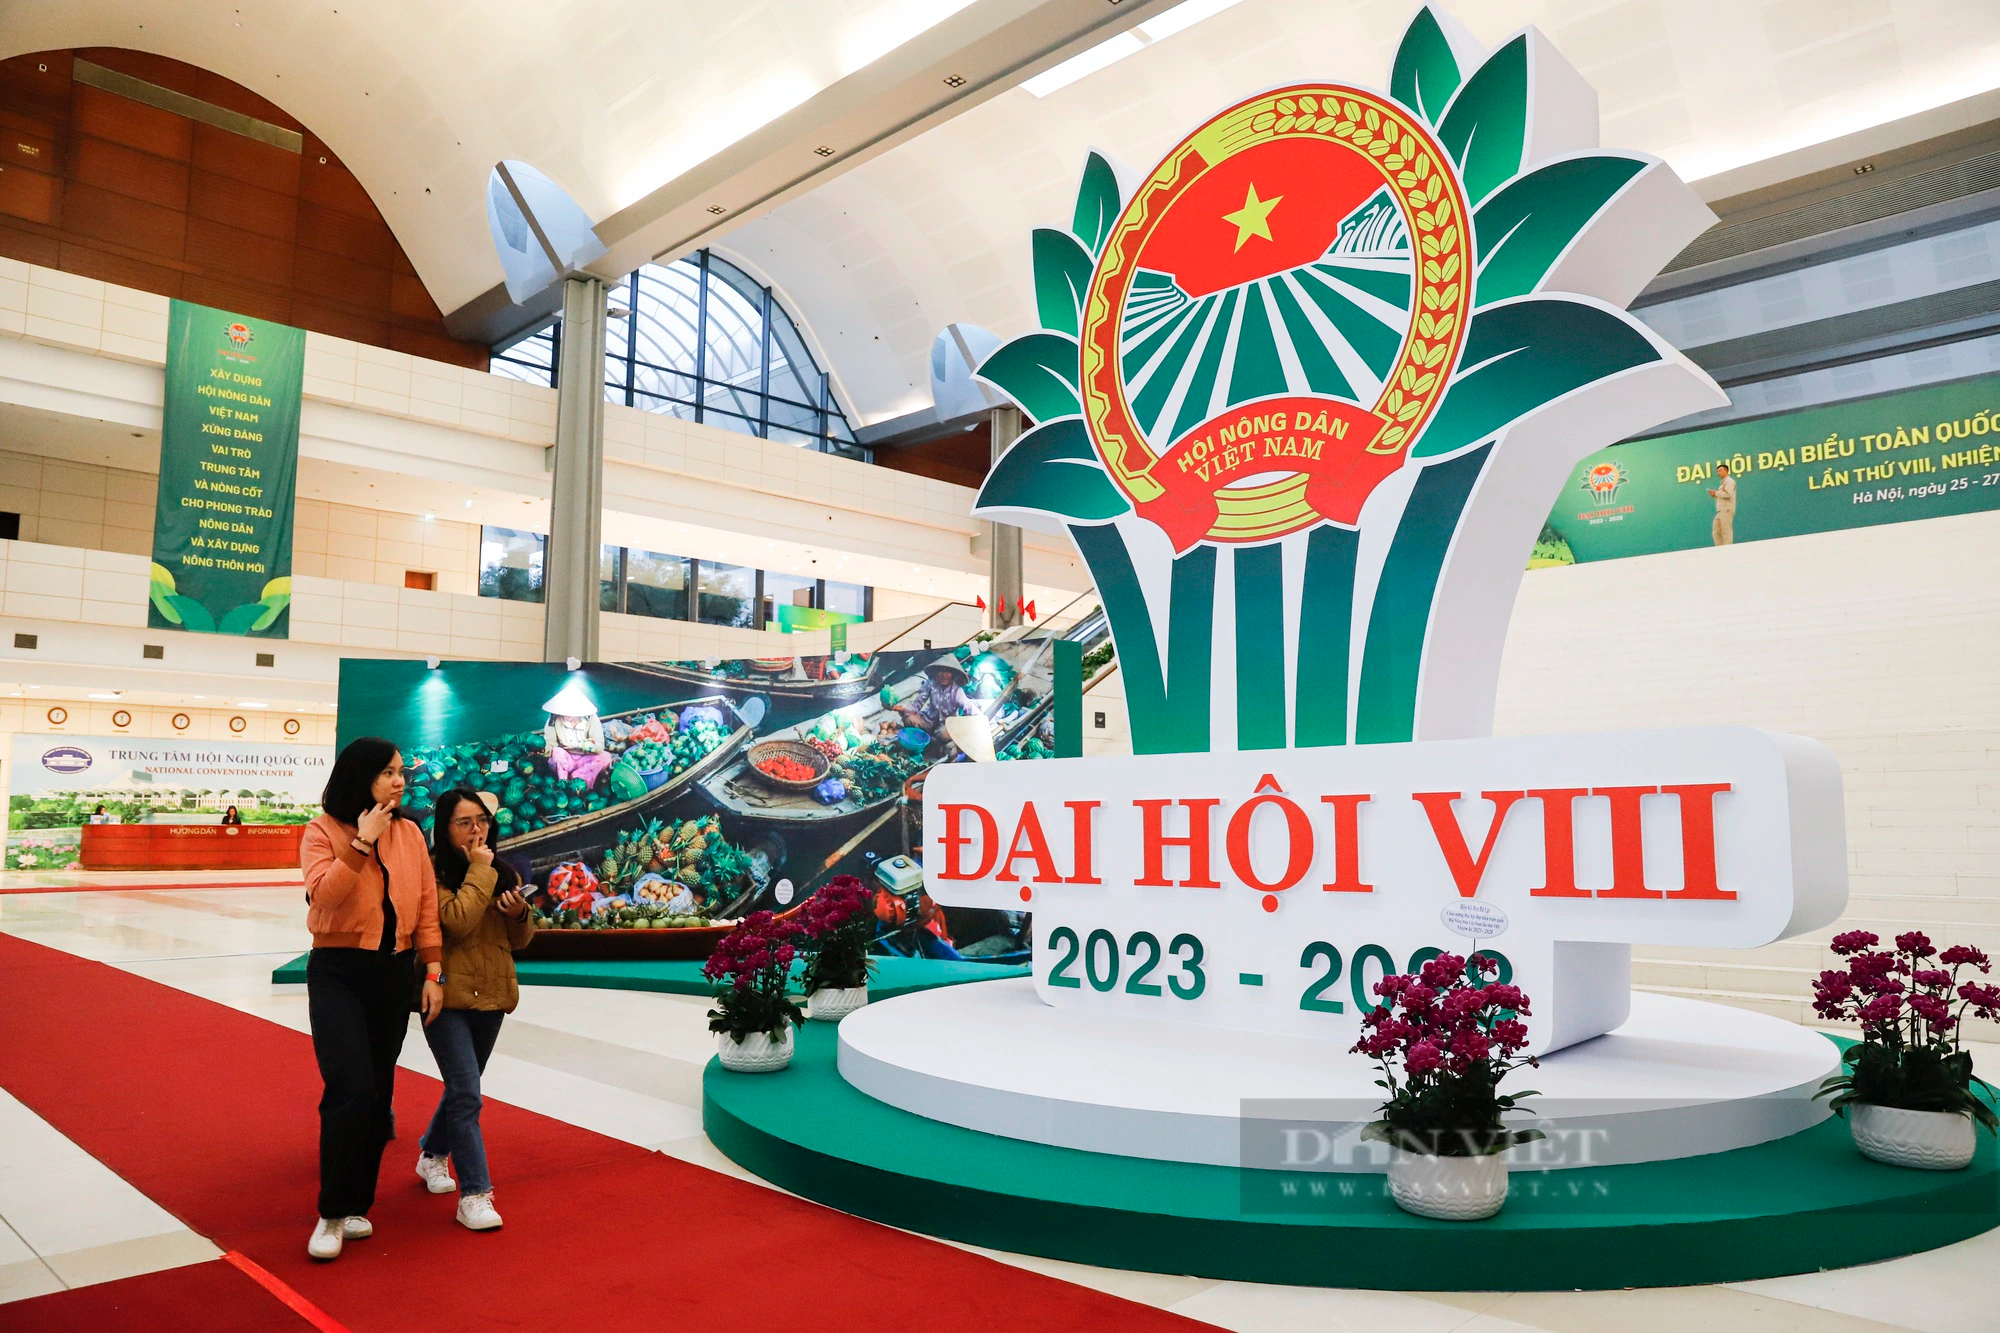 Chủ tịch Hội NDVN Lương Quốc Đoàn kiểm tra công tác chuẩn bị Đại hội VIII Hội nông dân Việt Nam - Ảnh 12.